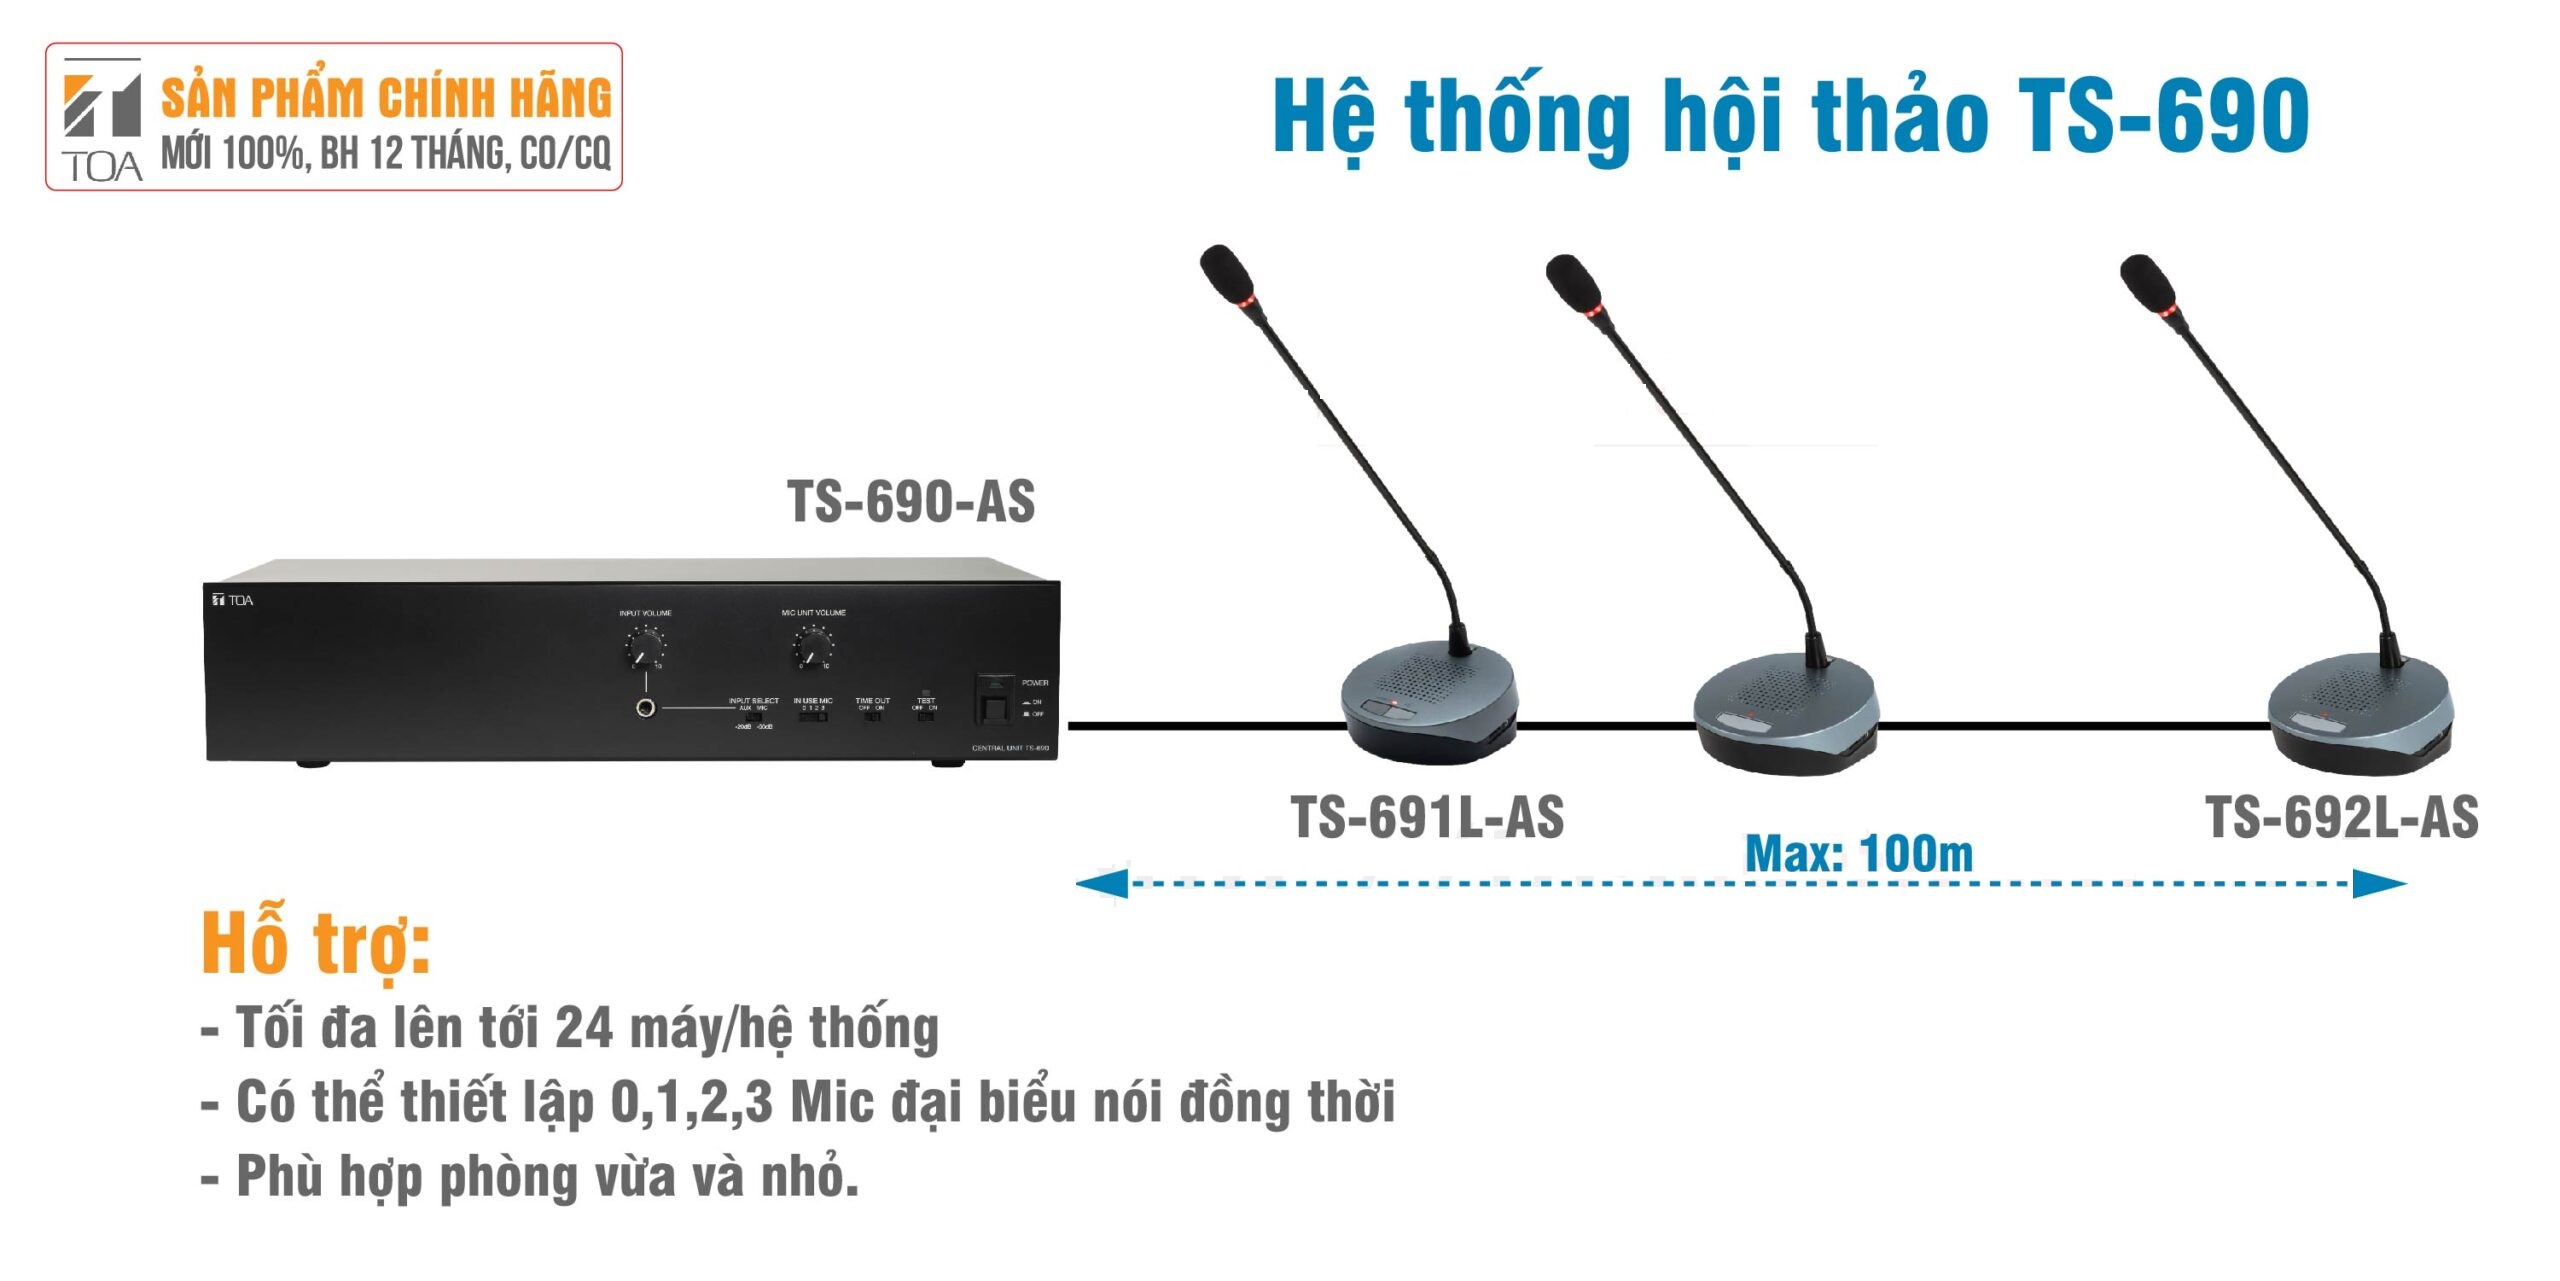 Hệ thống hội thảo có dây TS-690